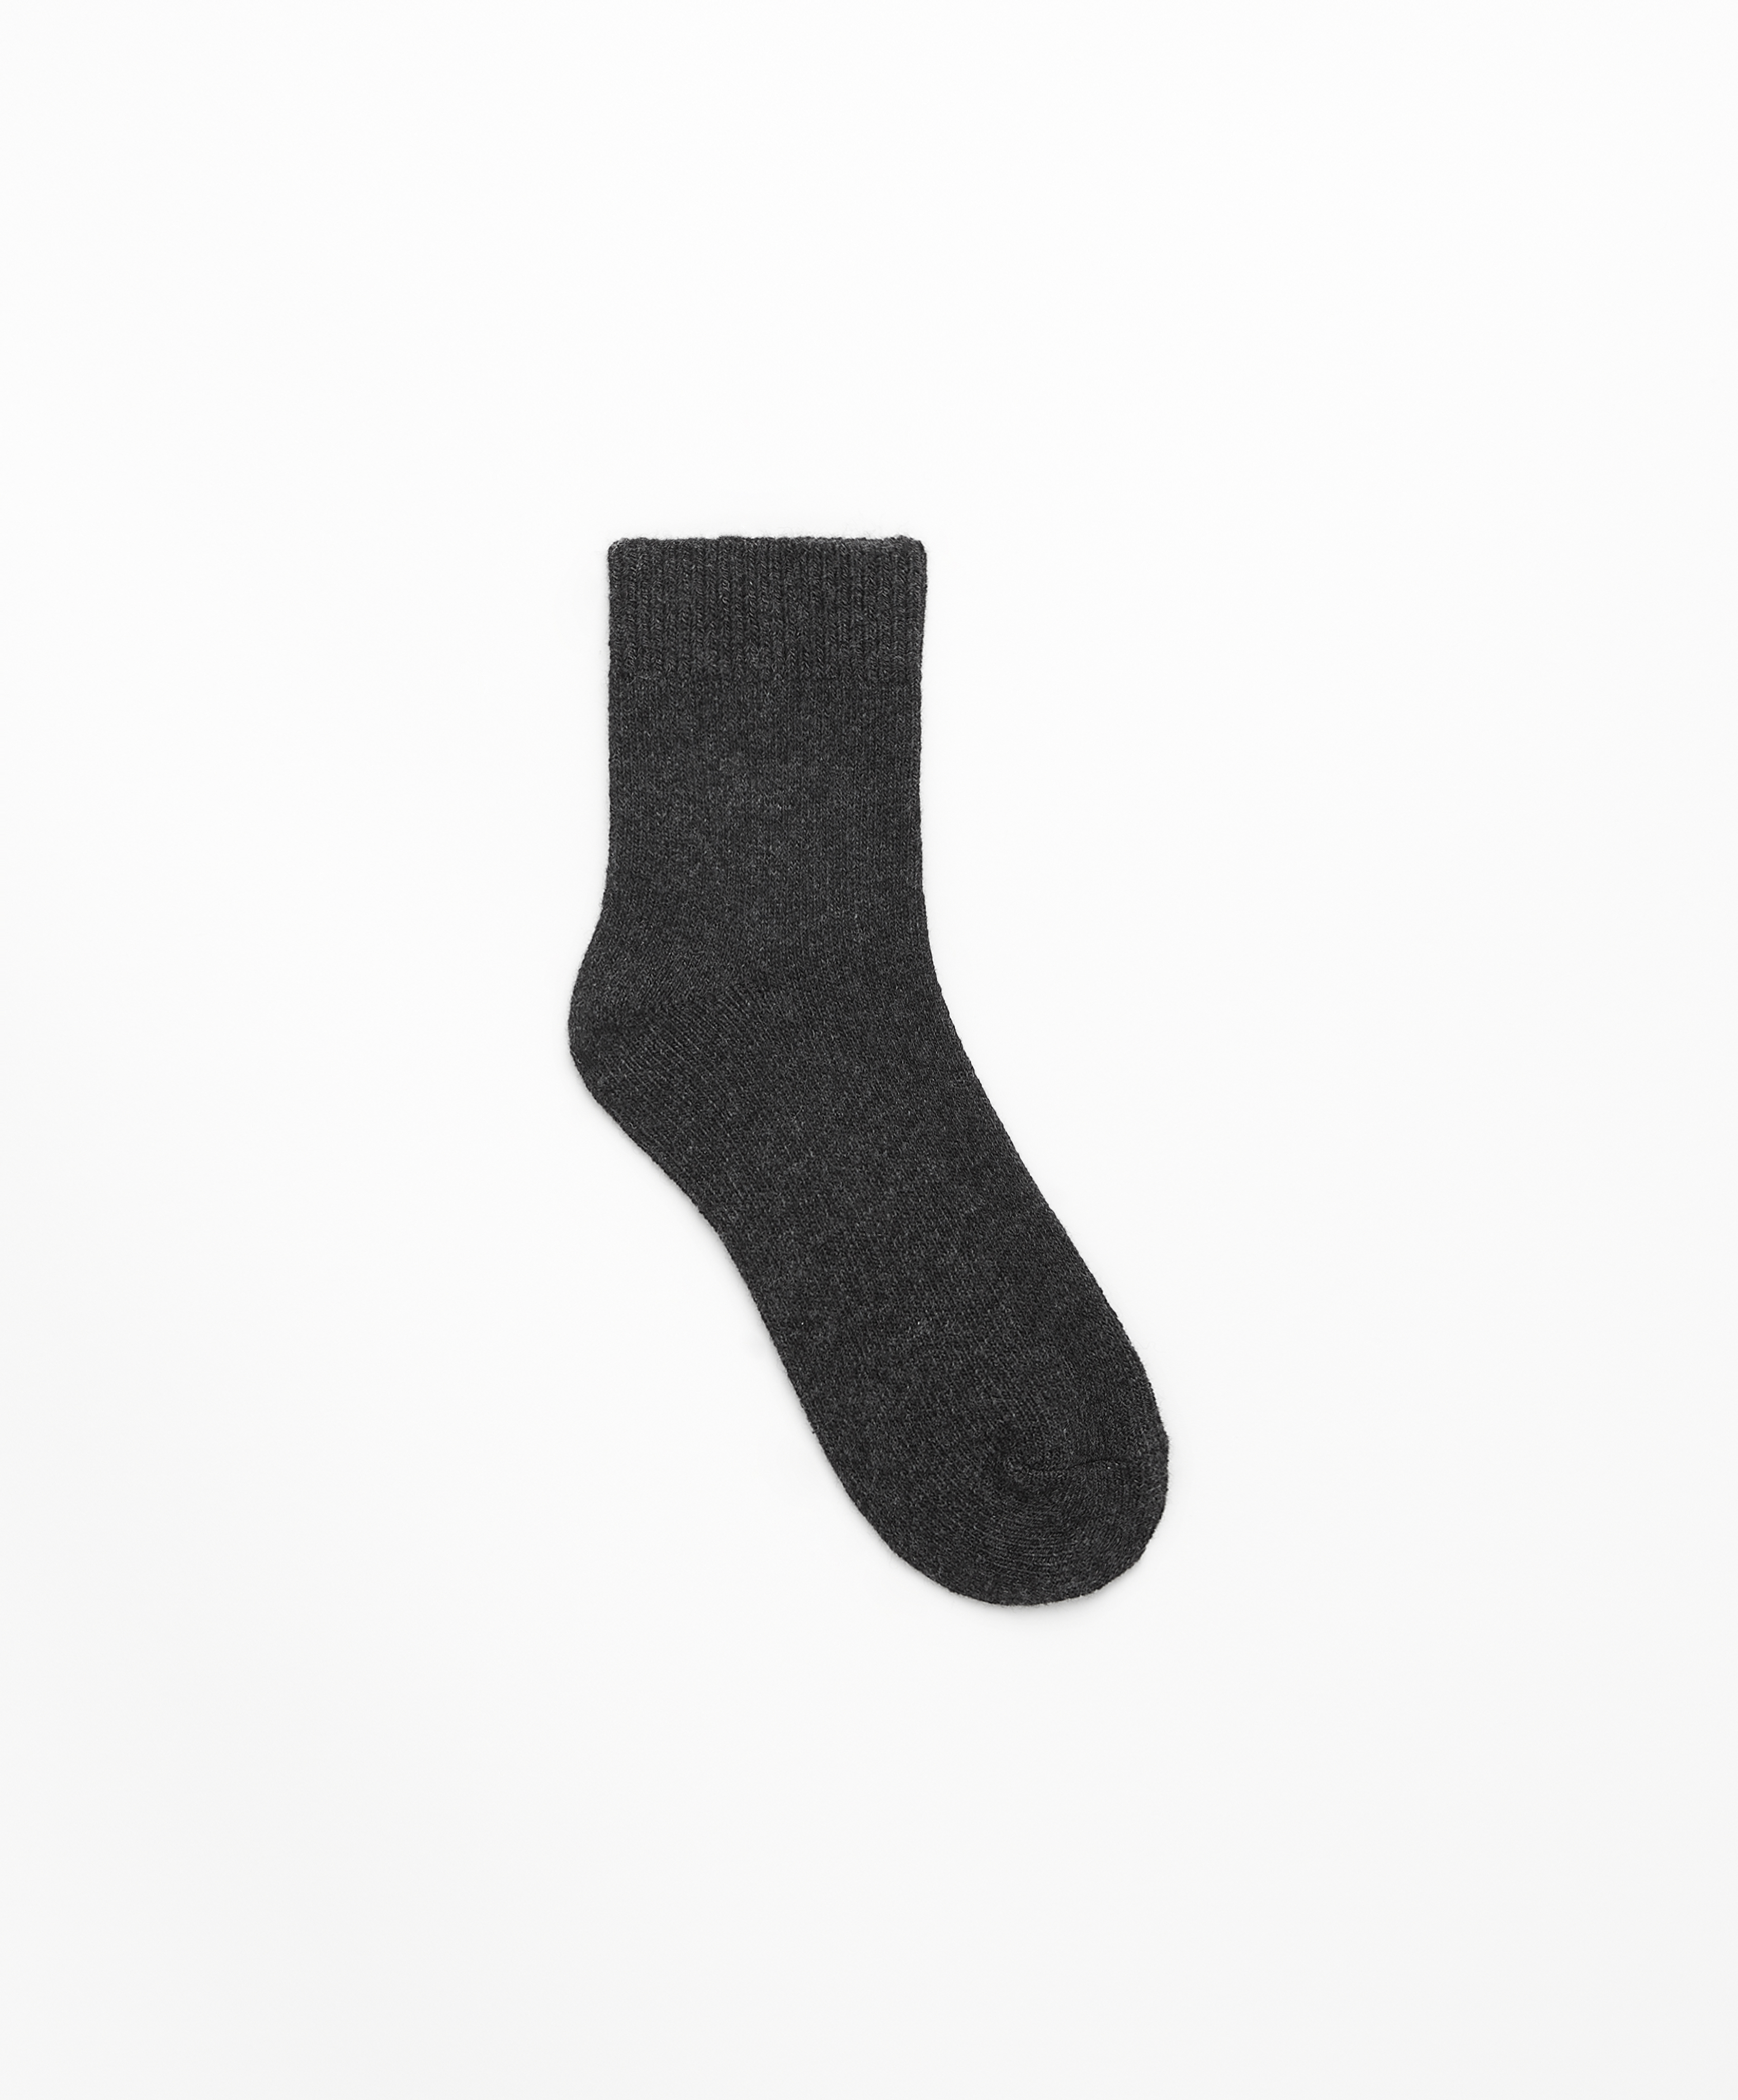 Quarter-Socken aus 23 % Wolle und 5 % Cashmere